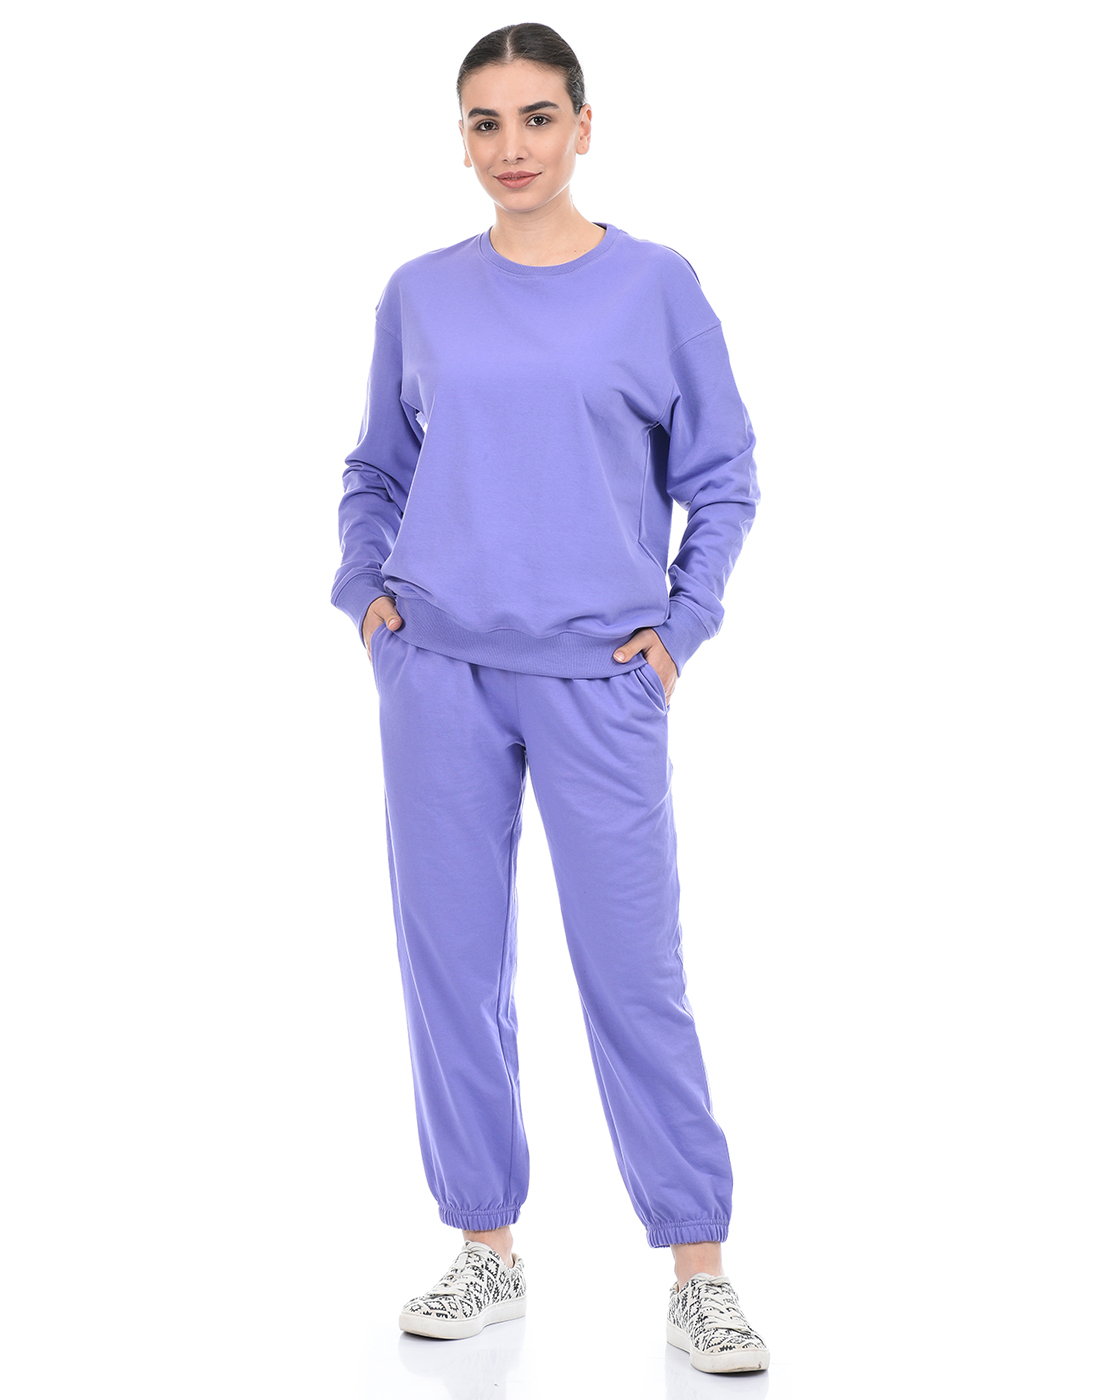 ONEWAY Women Solid Purple Loungewear